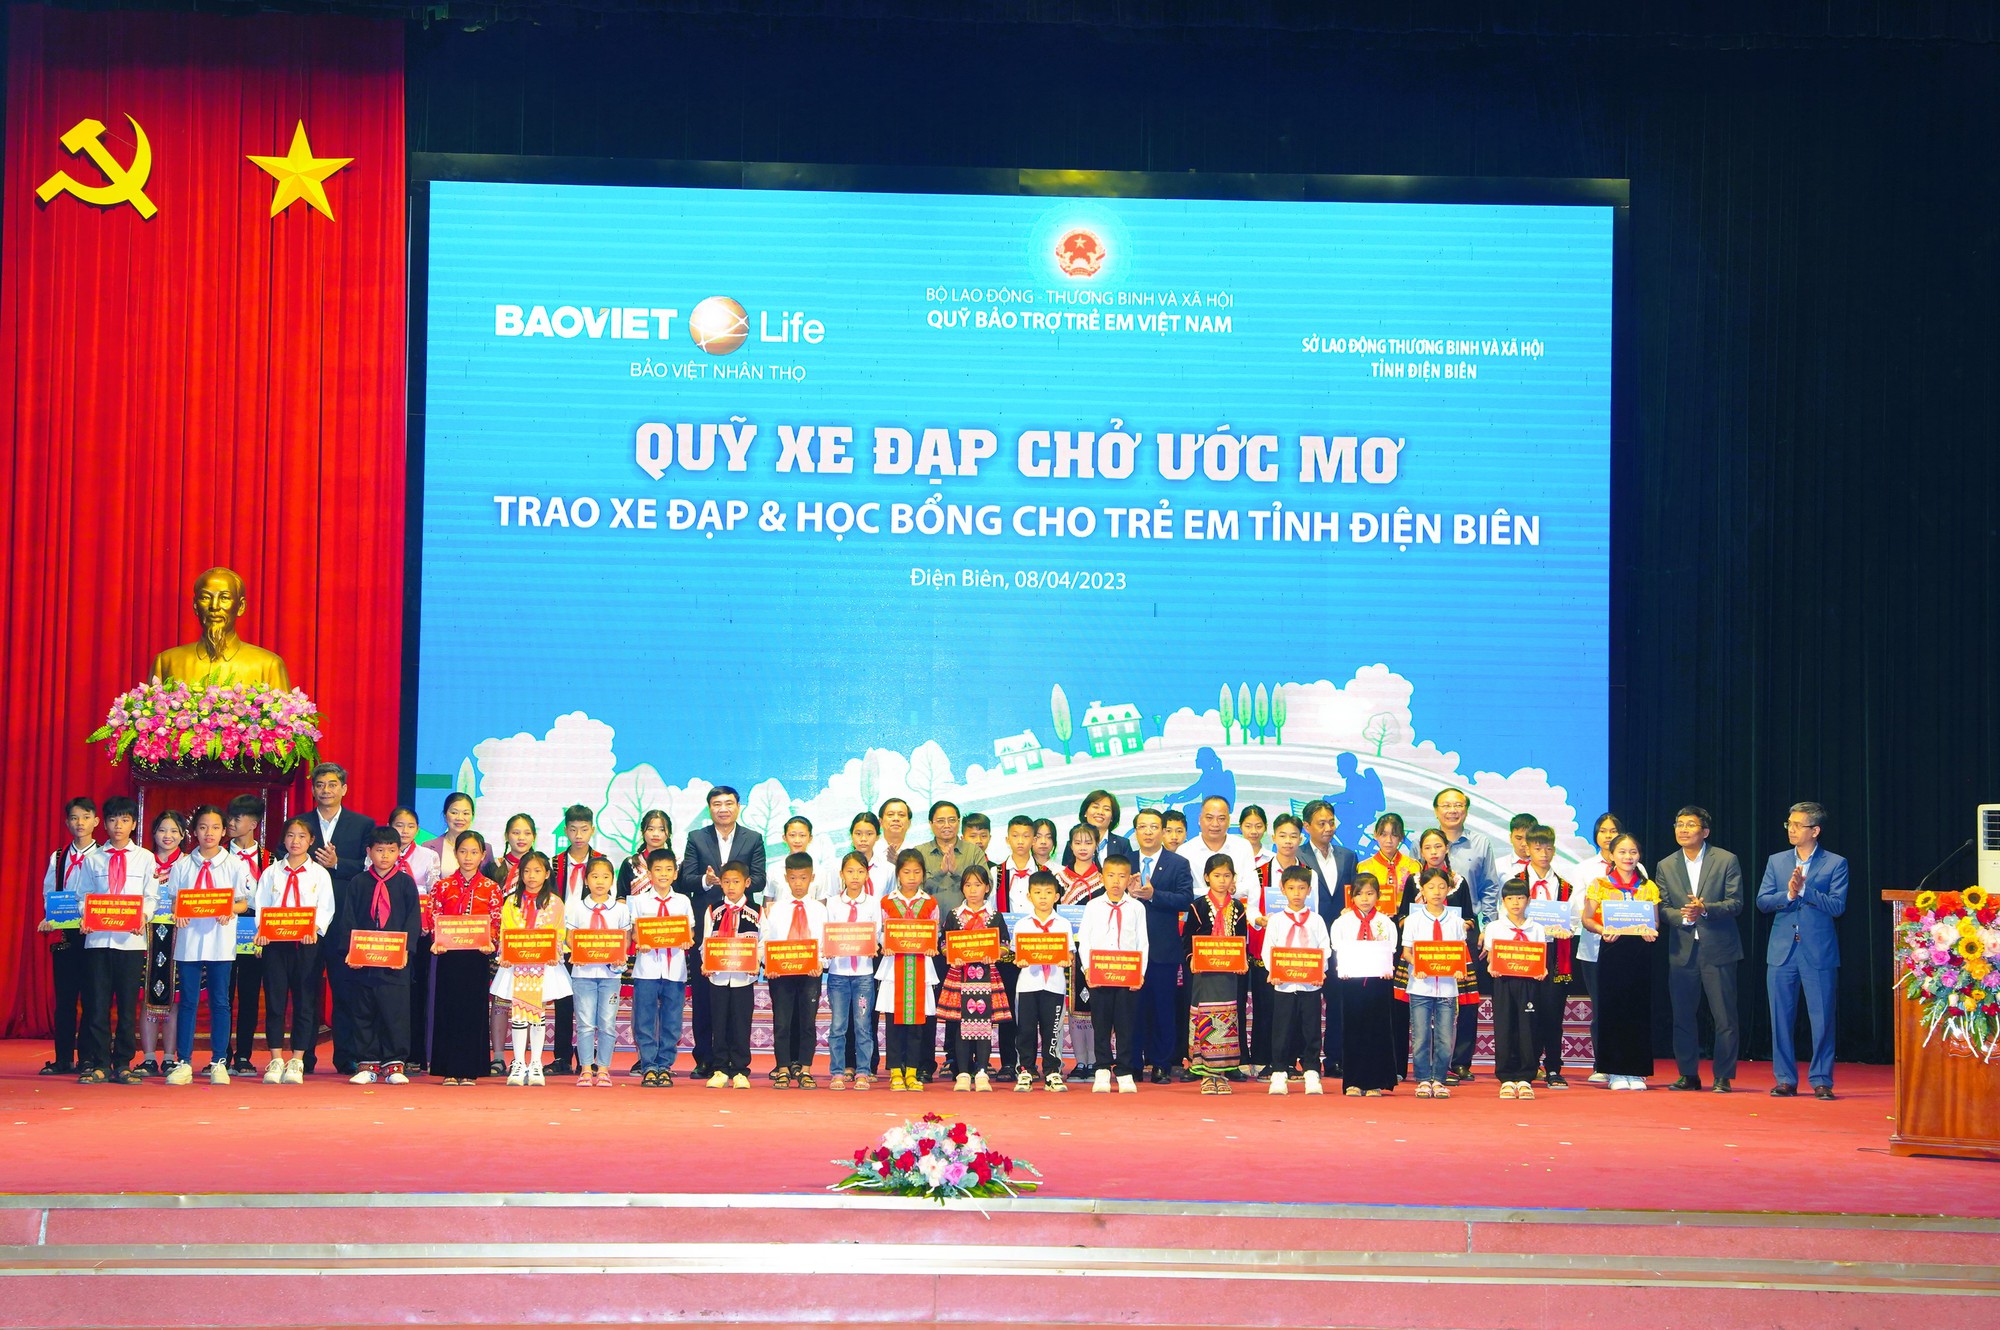 Đại diện 400 em học sinh nhận học bổng từ “Quỹ xe đạp chở ước mơ” của Bảo Việt Nhân thọ vinh dự chụp hình cùng Thủ tướng Phạm Minh Chính